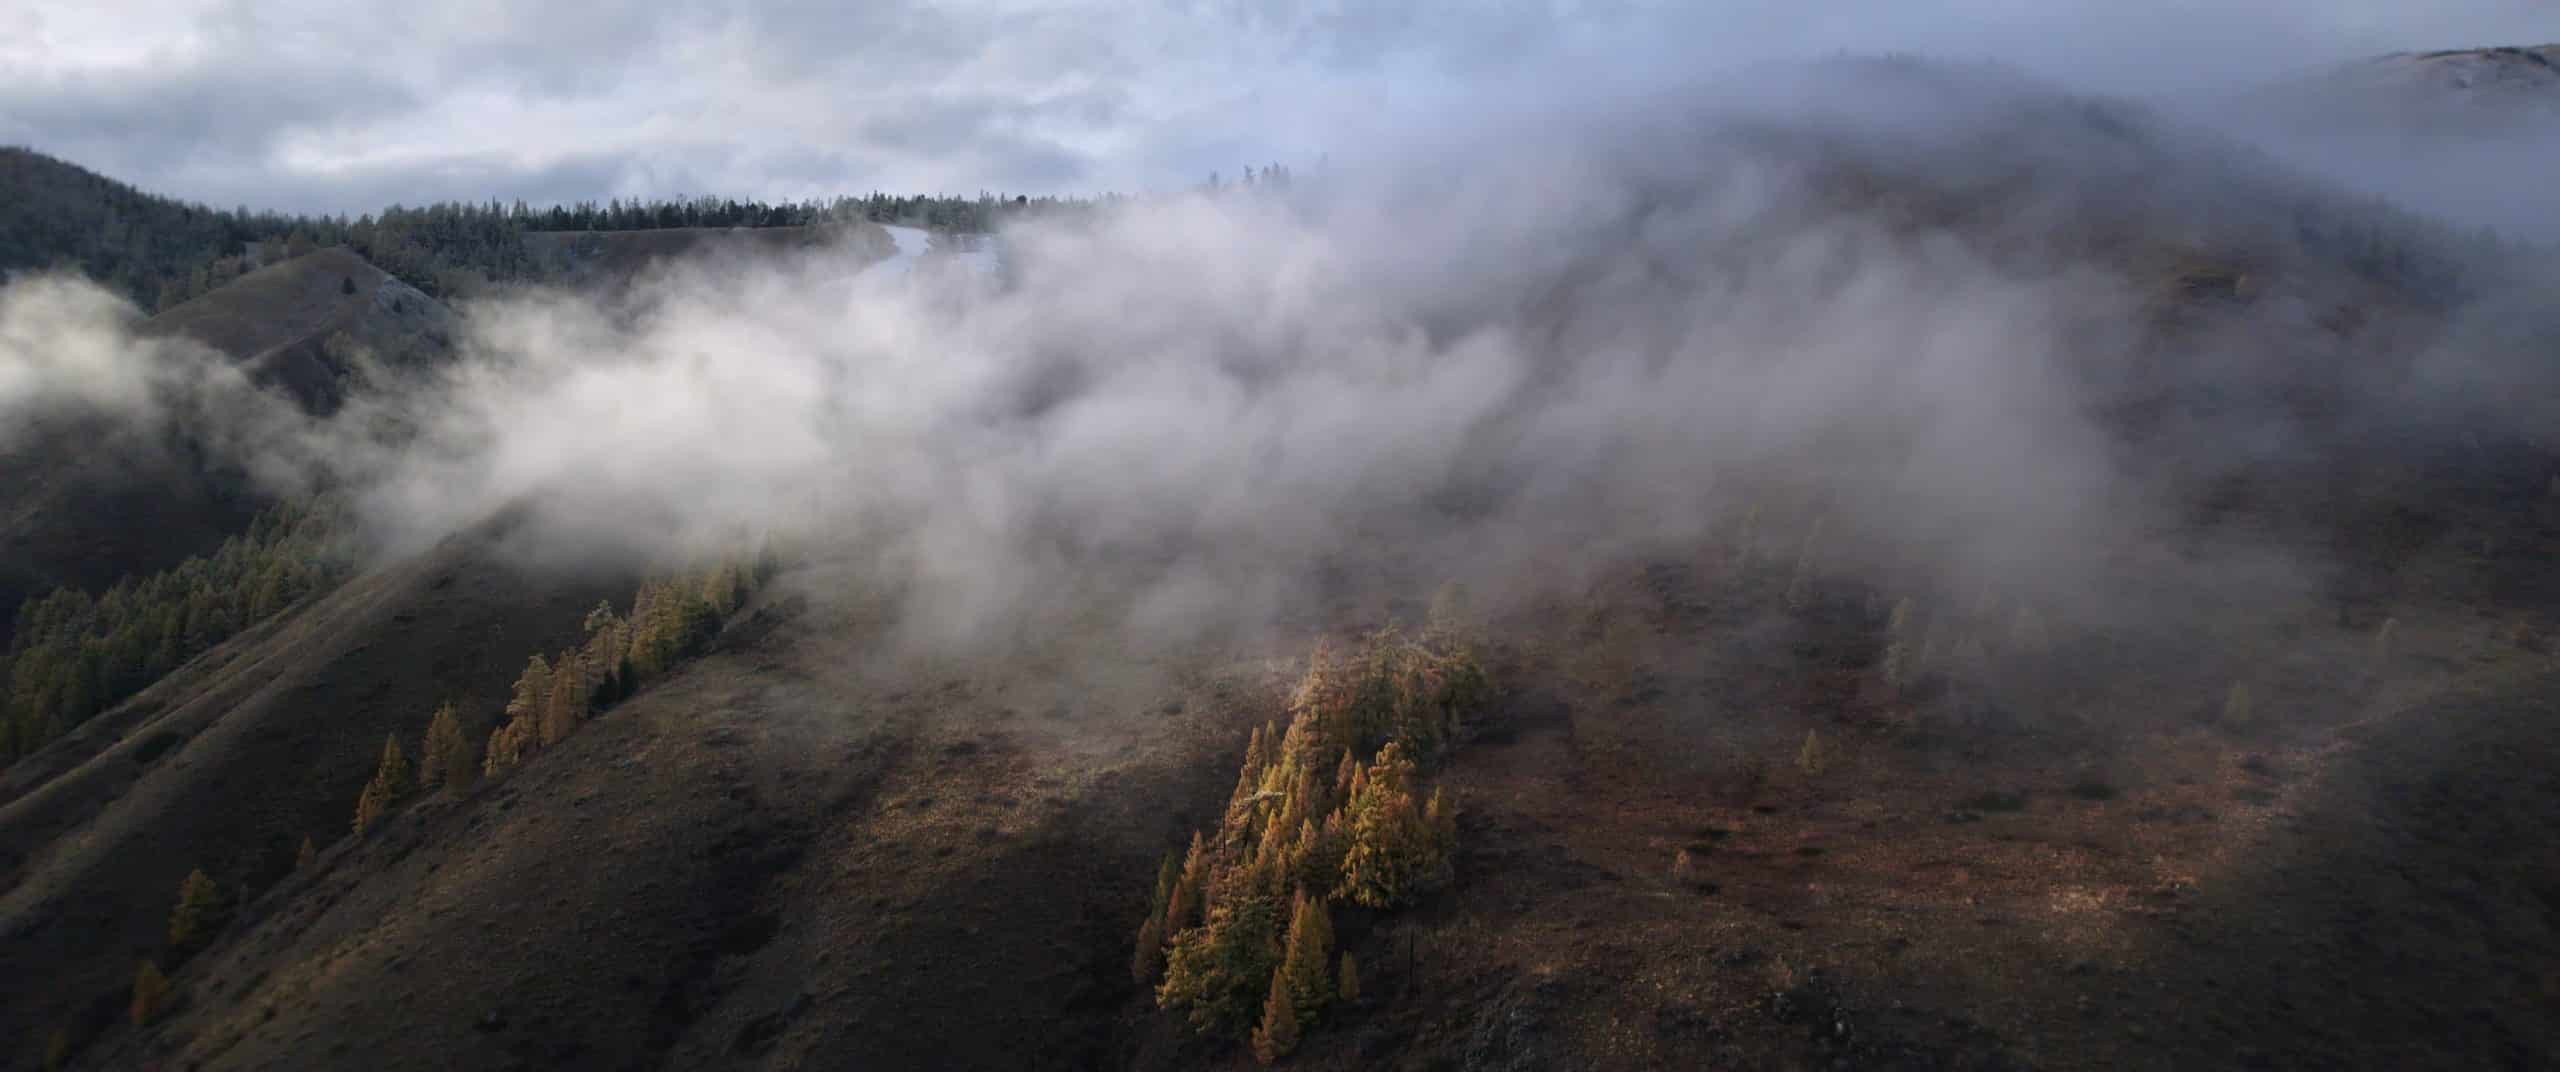 Thước phim ‘Spirit of Altai’ thực hiện với DJI Air 2S cho thấy vẻ đẹp đáng giá của vùng đất Siberia